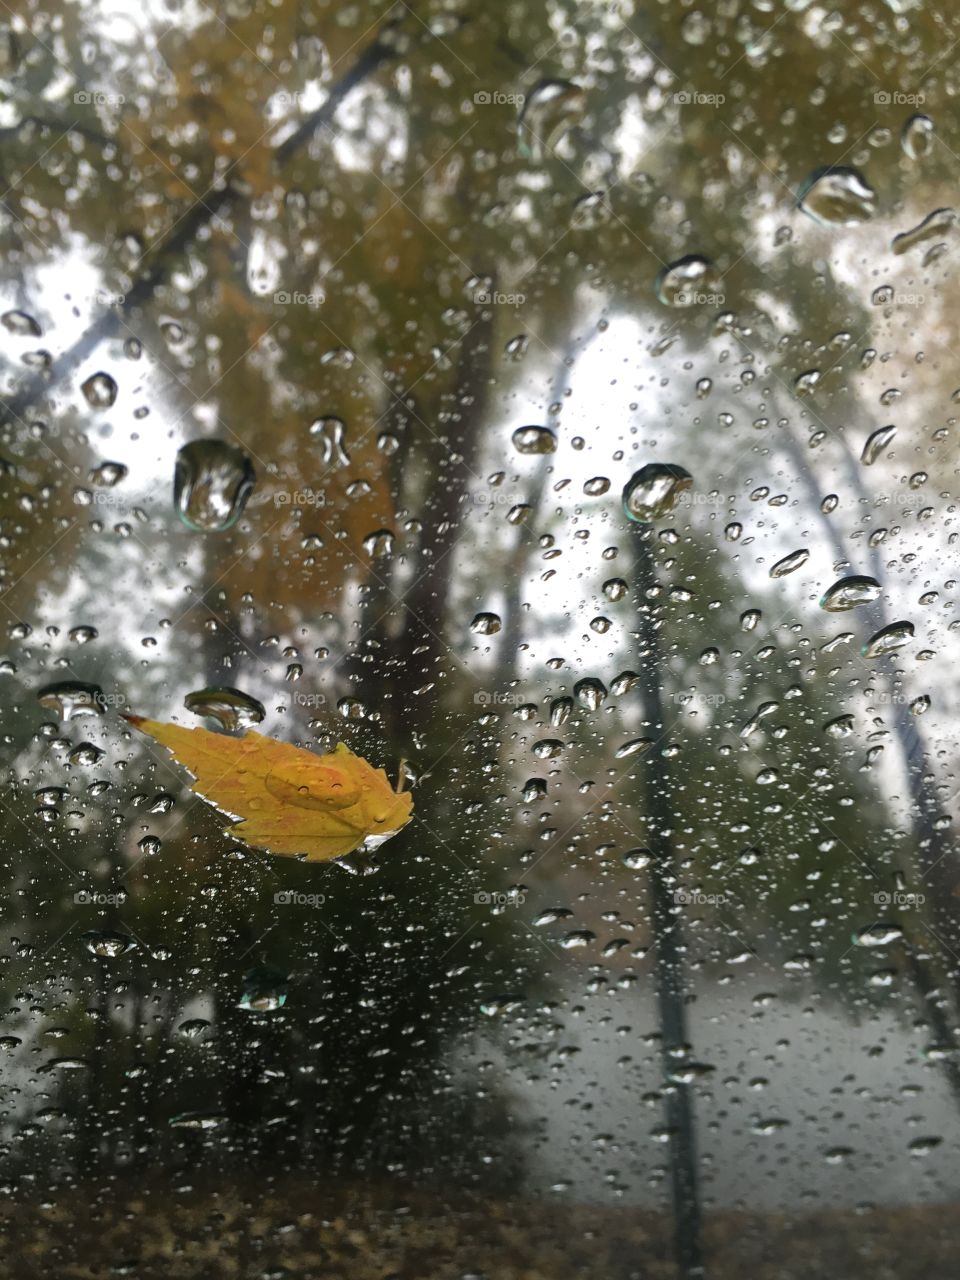 Rainy autumn windshield
